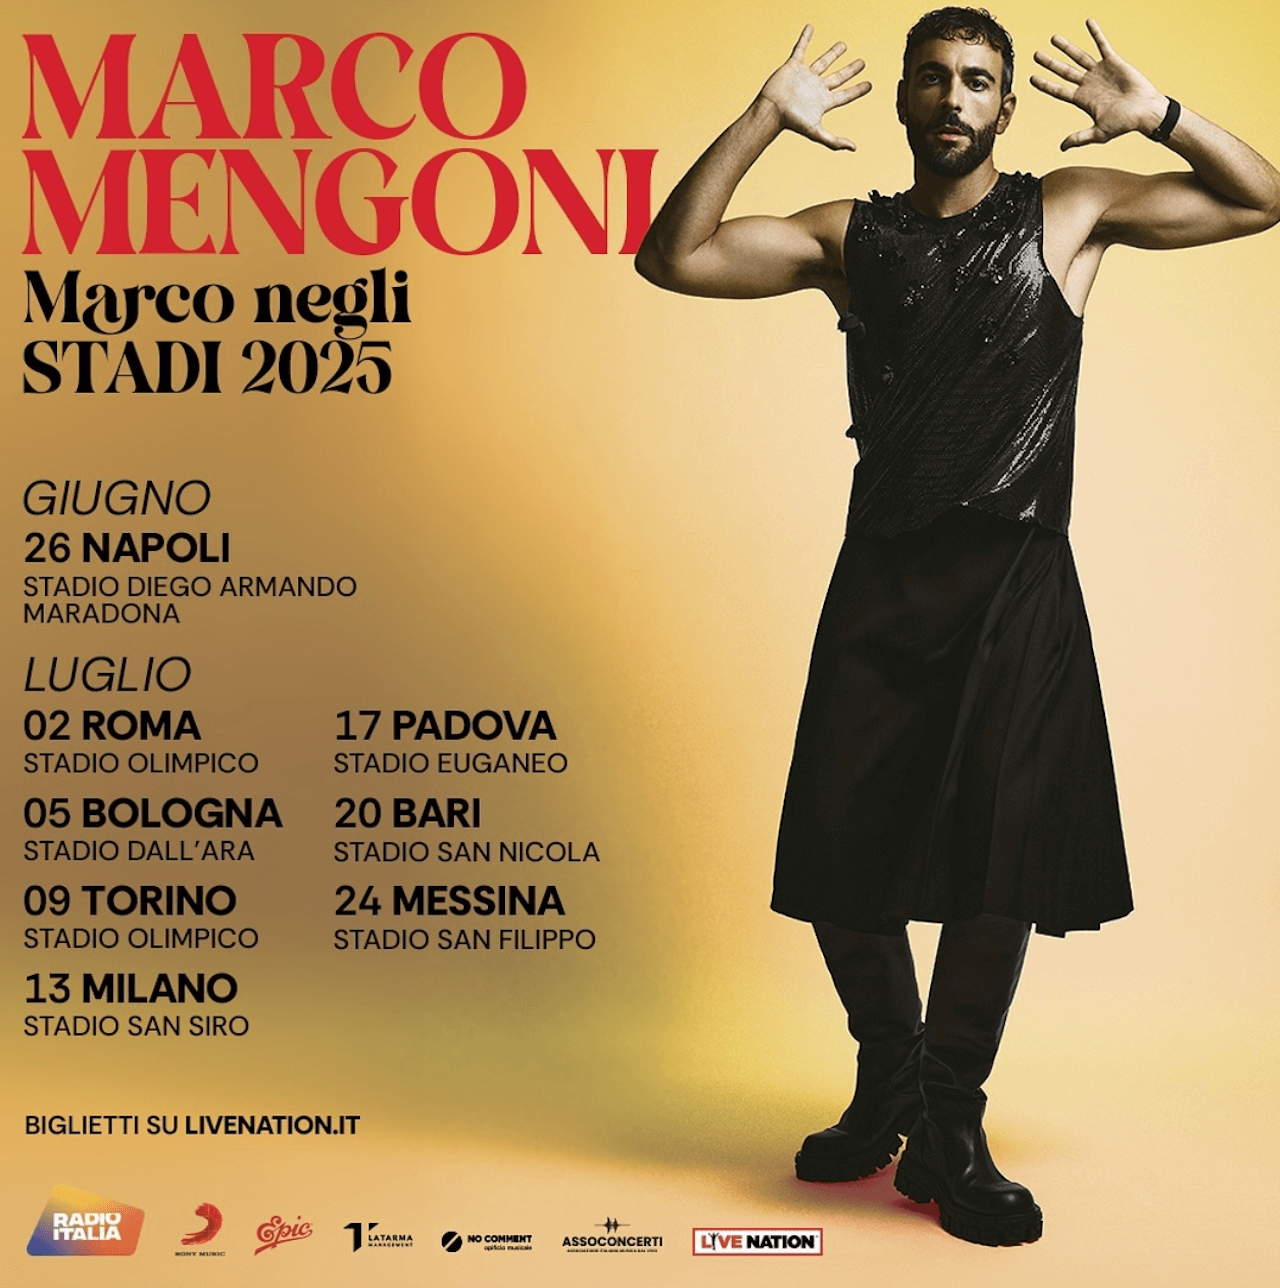 Marco Mengoni annuncia il tour negli stadi nel 2025 e rivela: “Vorrei ma non ho ancora trovato l’amore” - Marco Mengoni annuncia il tour negli stadi nel 2025 - Gay.it